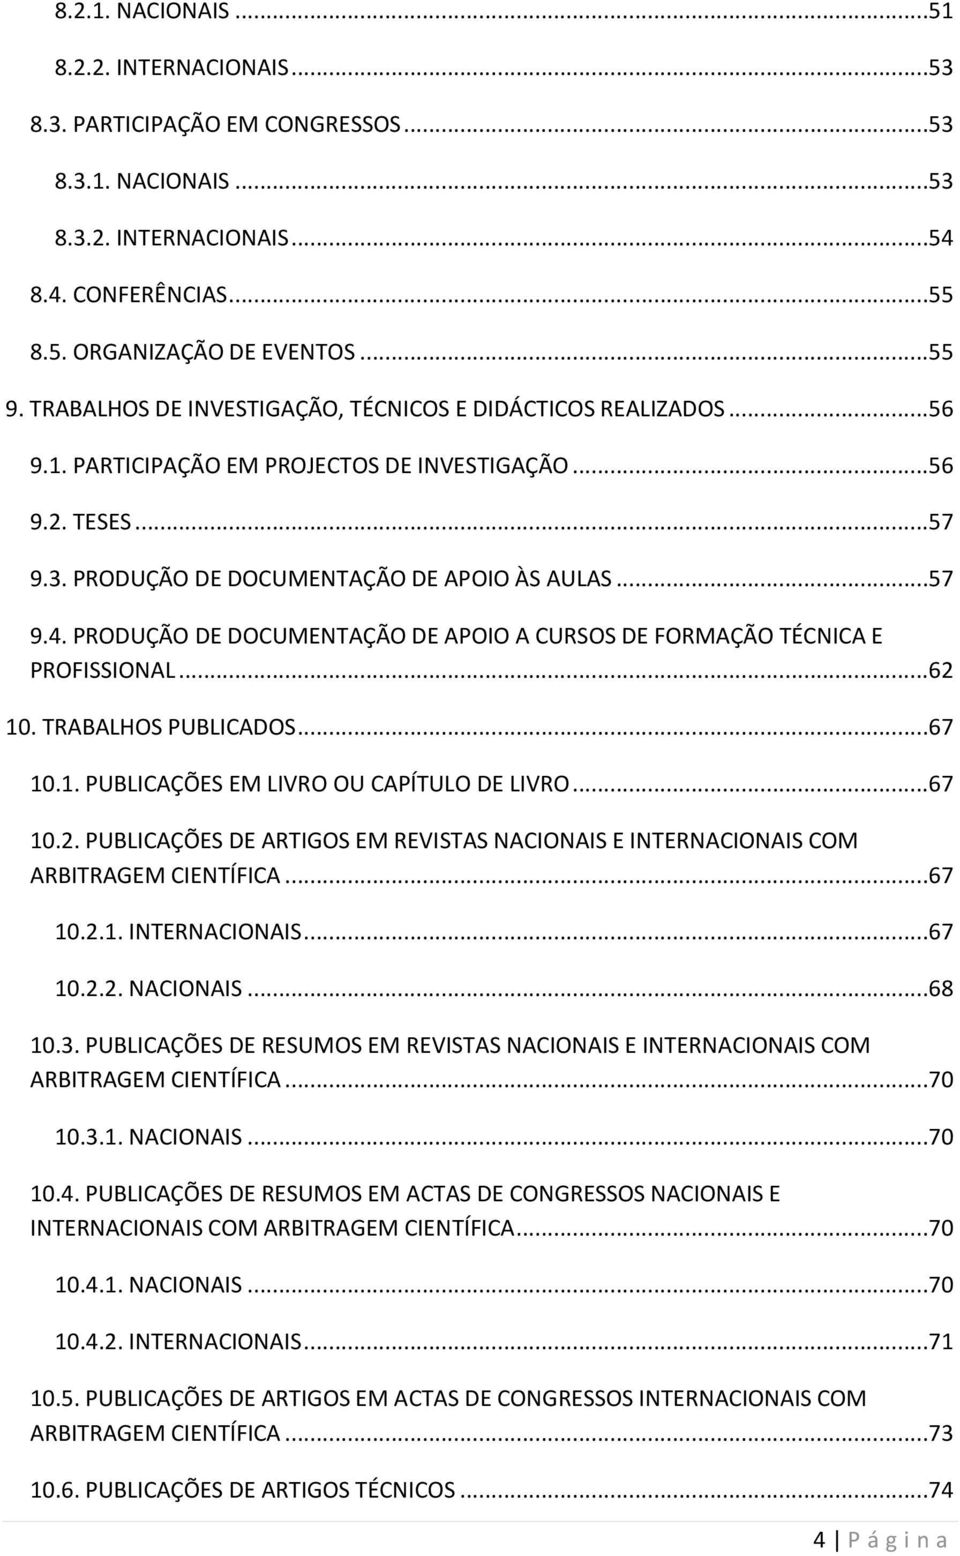 PRODUÇÃO DE DOCUMENTAÇÃO DE APOIO A CURSOS DE FORMAÇÃO TÉCNICA E PROFISSIONAL...62 10. TRABALHOS PUBLICADOS...67 10.1. PUBLICAÇÕES EM LIVRO OU CAPÍTULO DE LIVRO...67 10.2. PUBLICAÇÕES DE ARTIGOS EM REVISTAS NACIONAIS E INTERNACIONAIS COM ARBITRAGEM CIENTÍFICA.